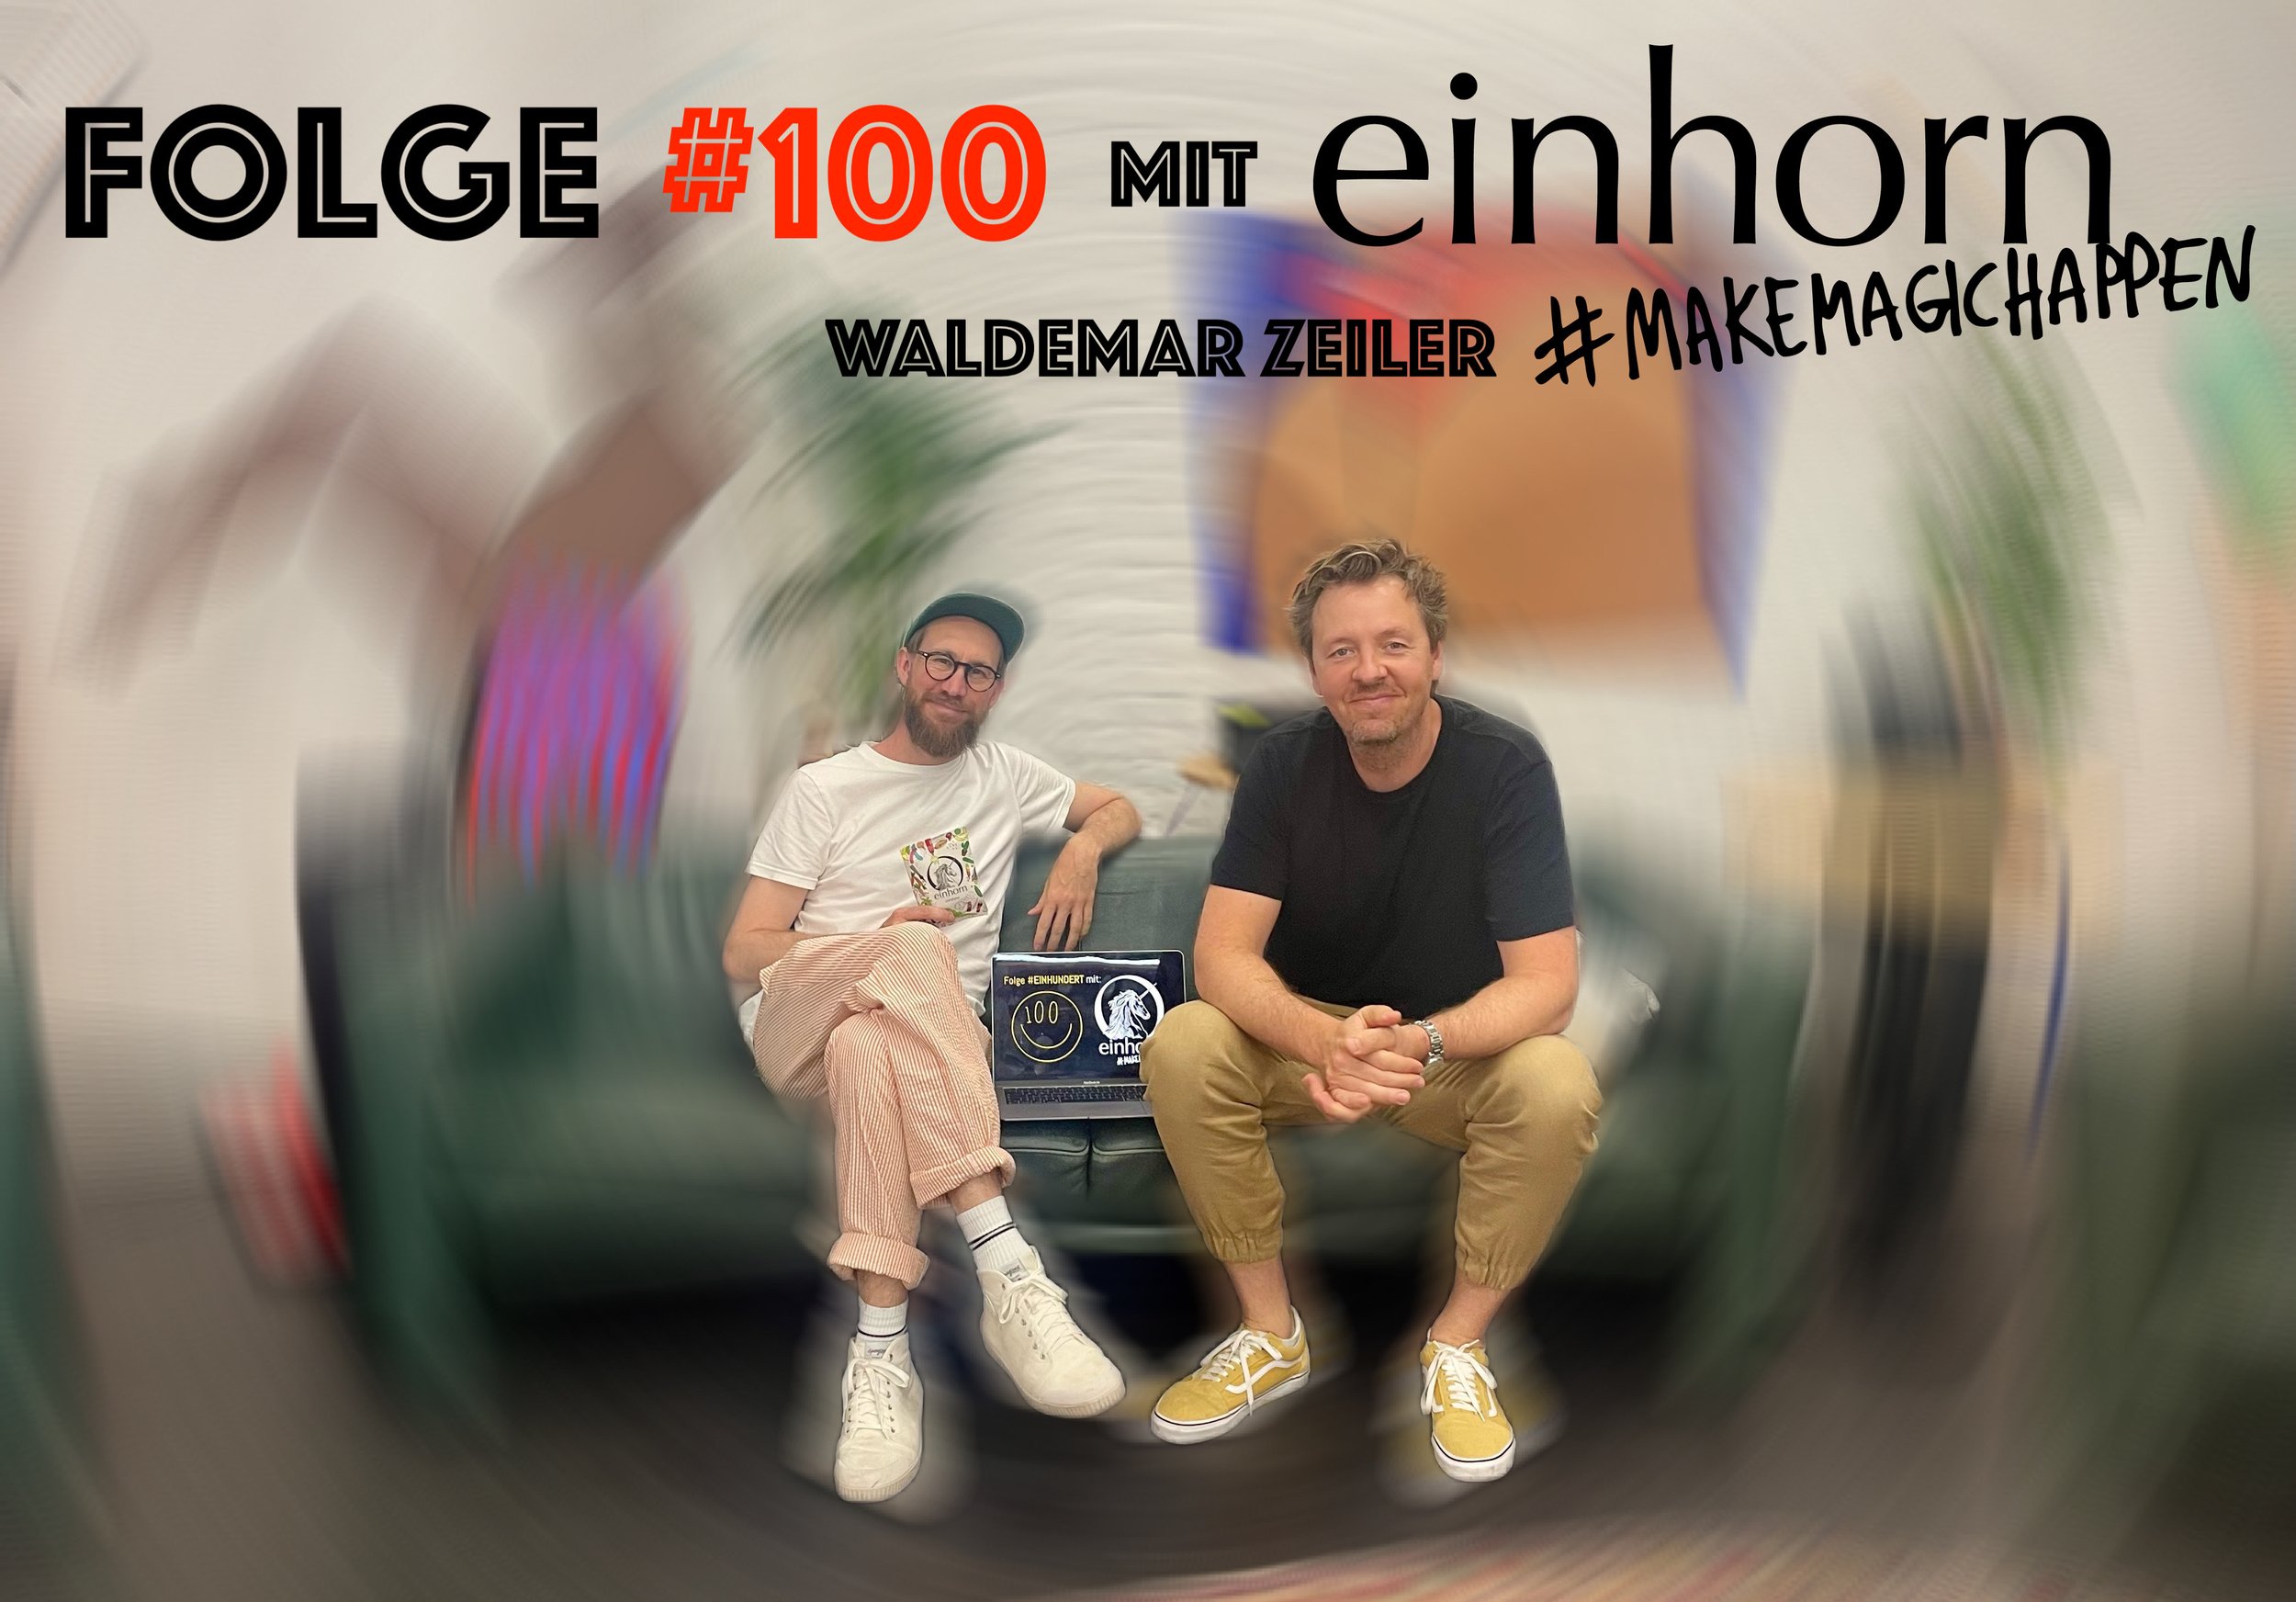 Episode #100 with Waldemar Zeiler from einhorn 